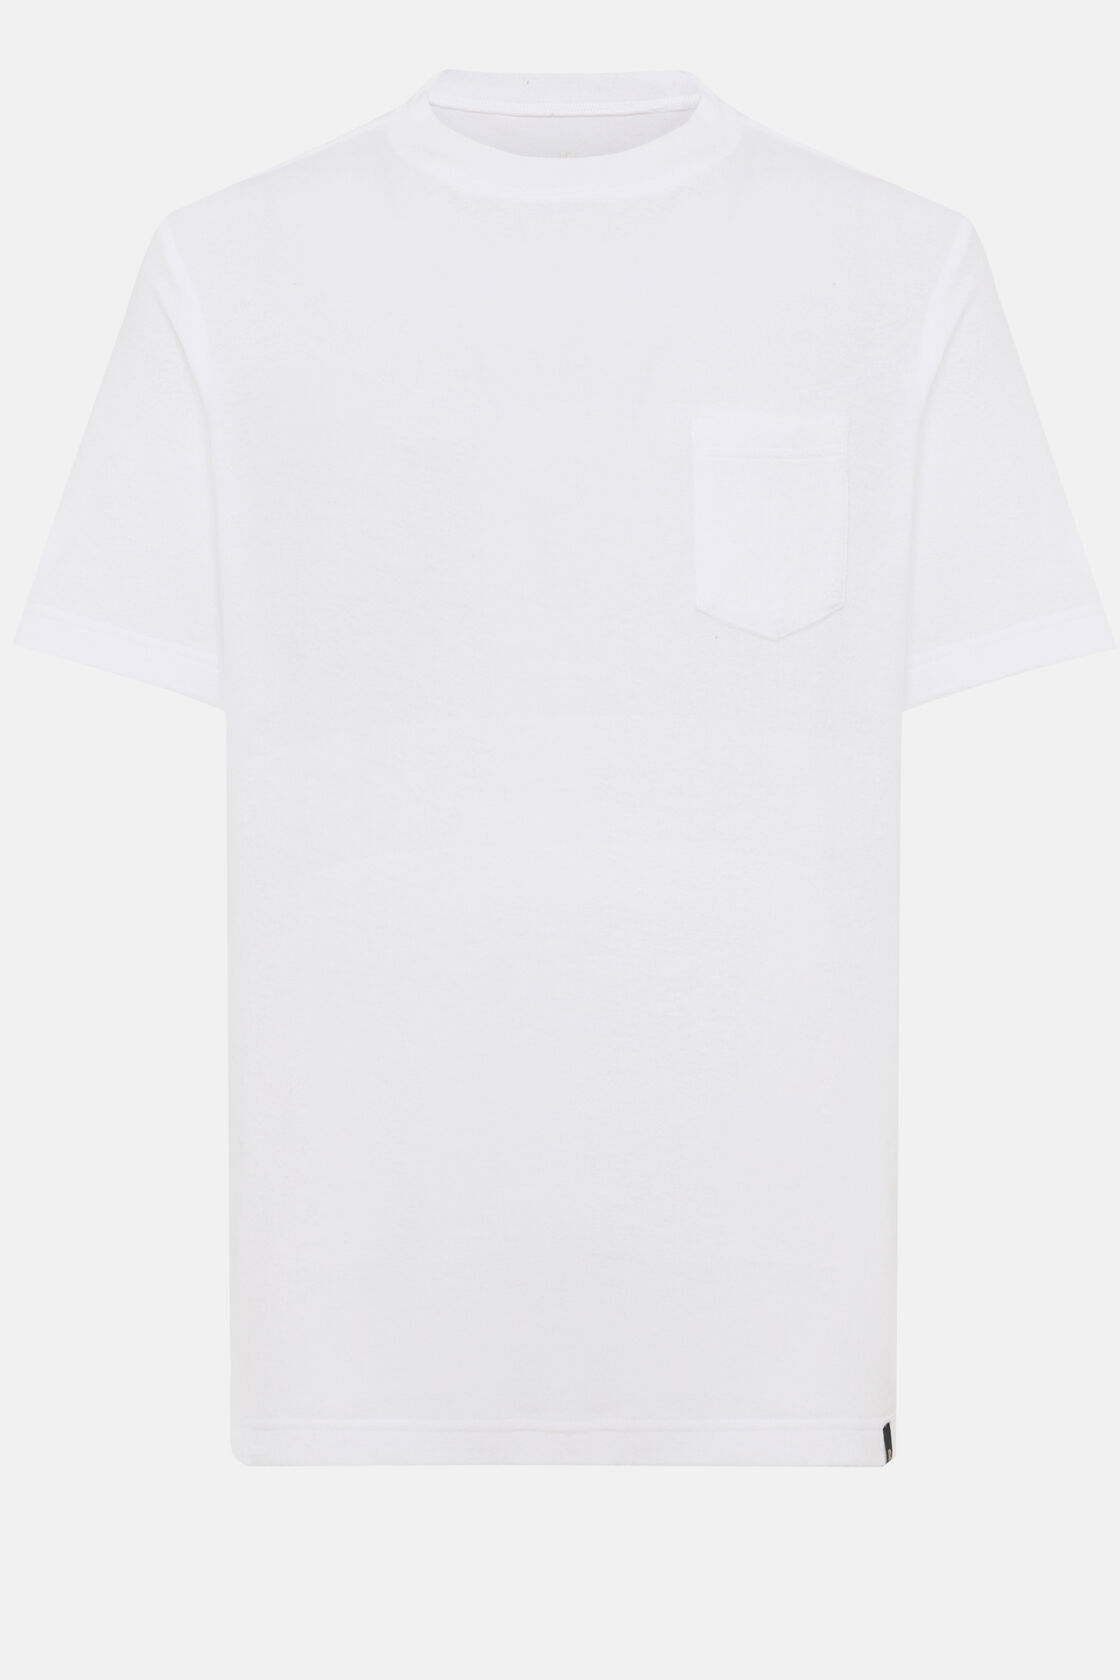 Cotton/Nylon T-Shirt, White, hi-res